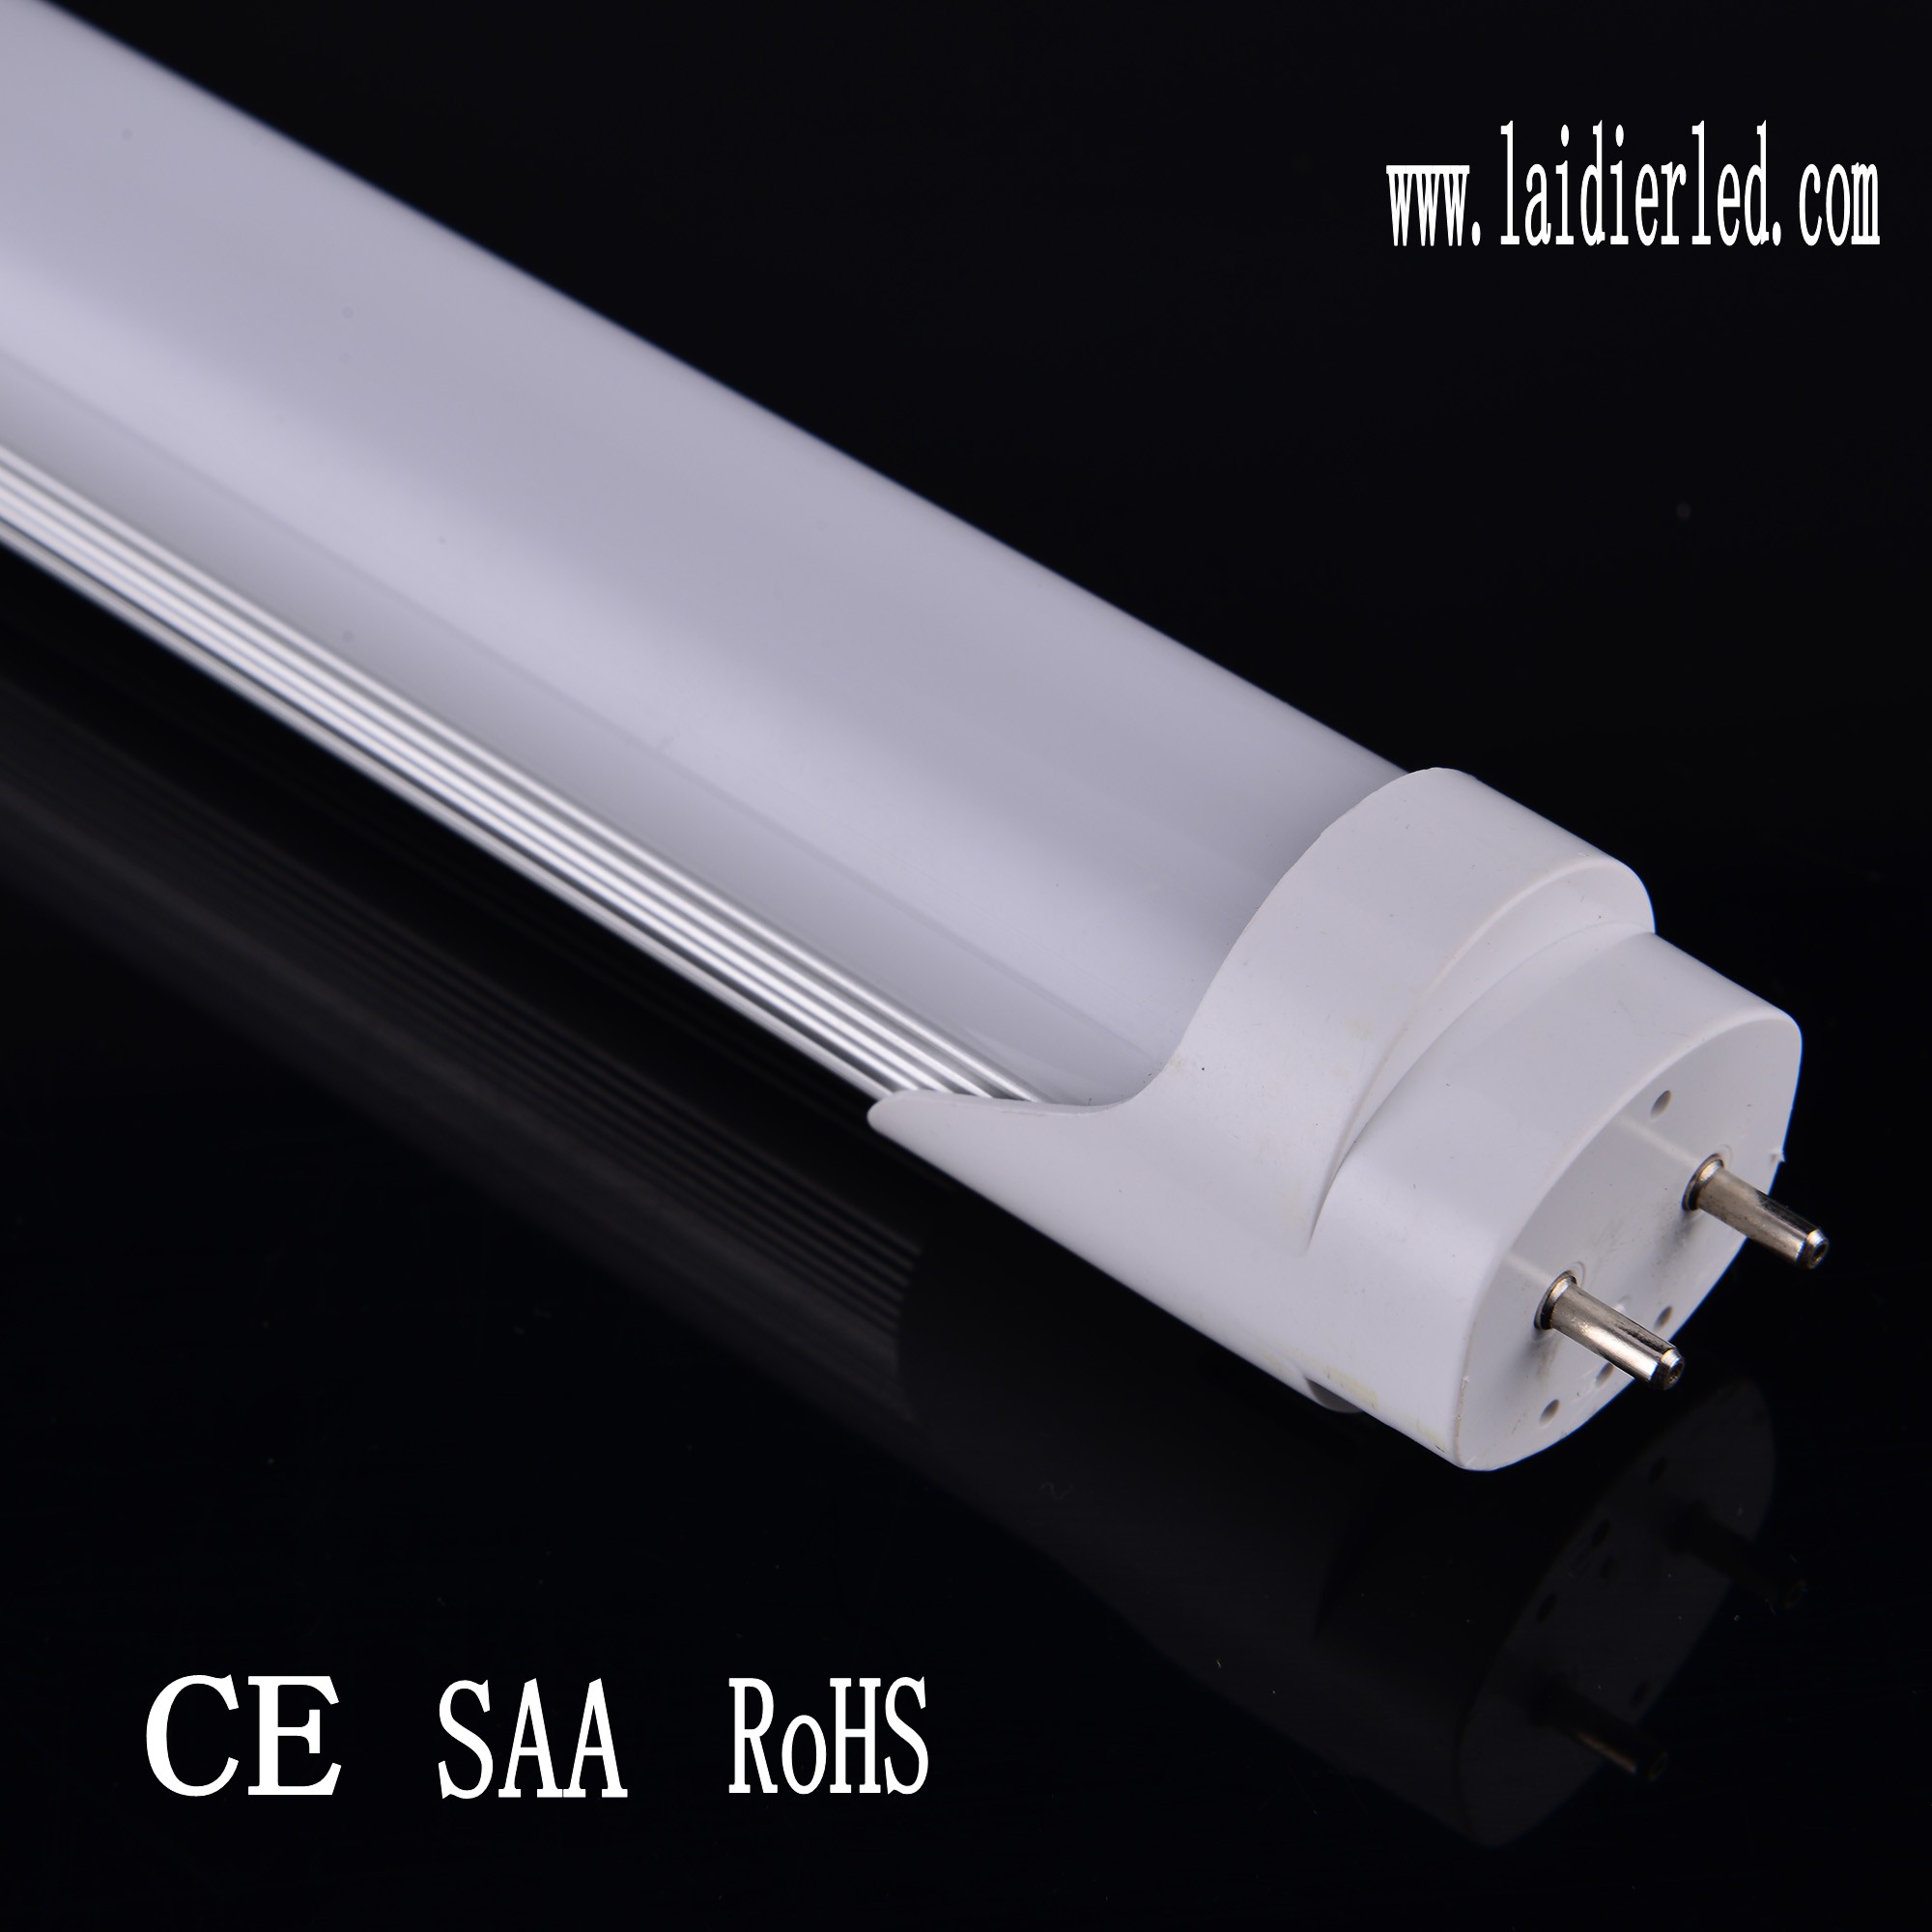 Special design LED Tube T8 1.5M 23W 2100lumens Aluminum PCB